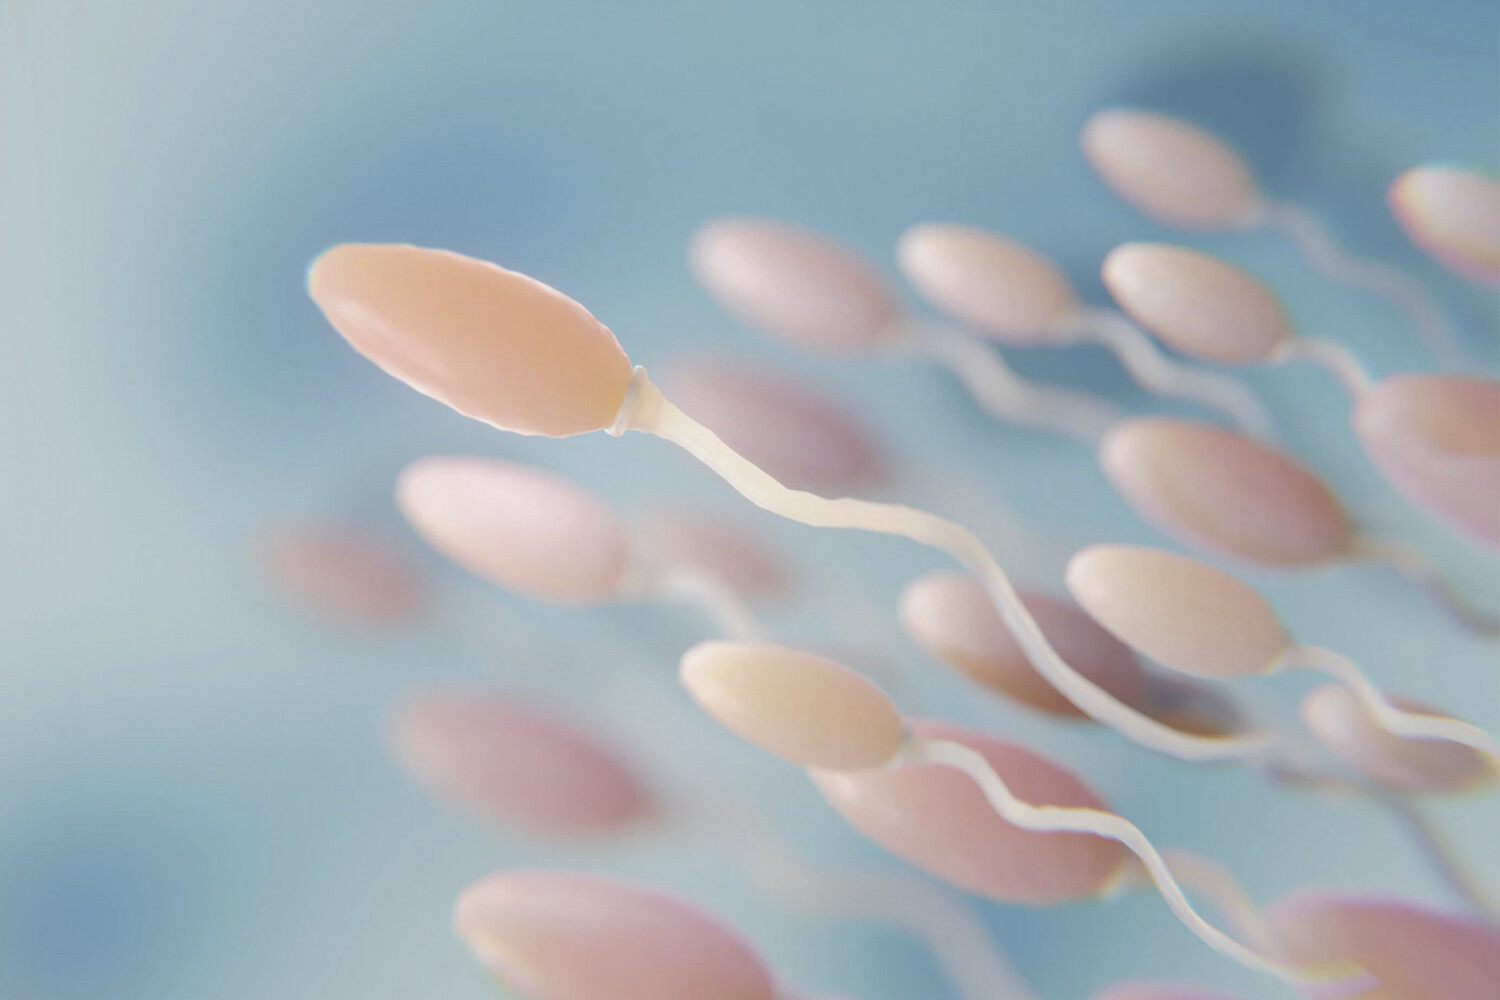 Оплодотворение яйцеклетки - описываем процесс зачатия подробно